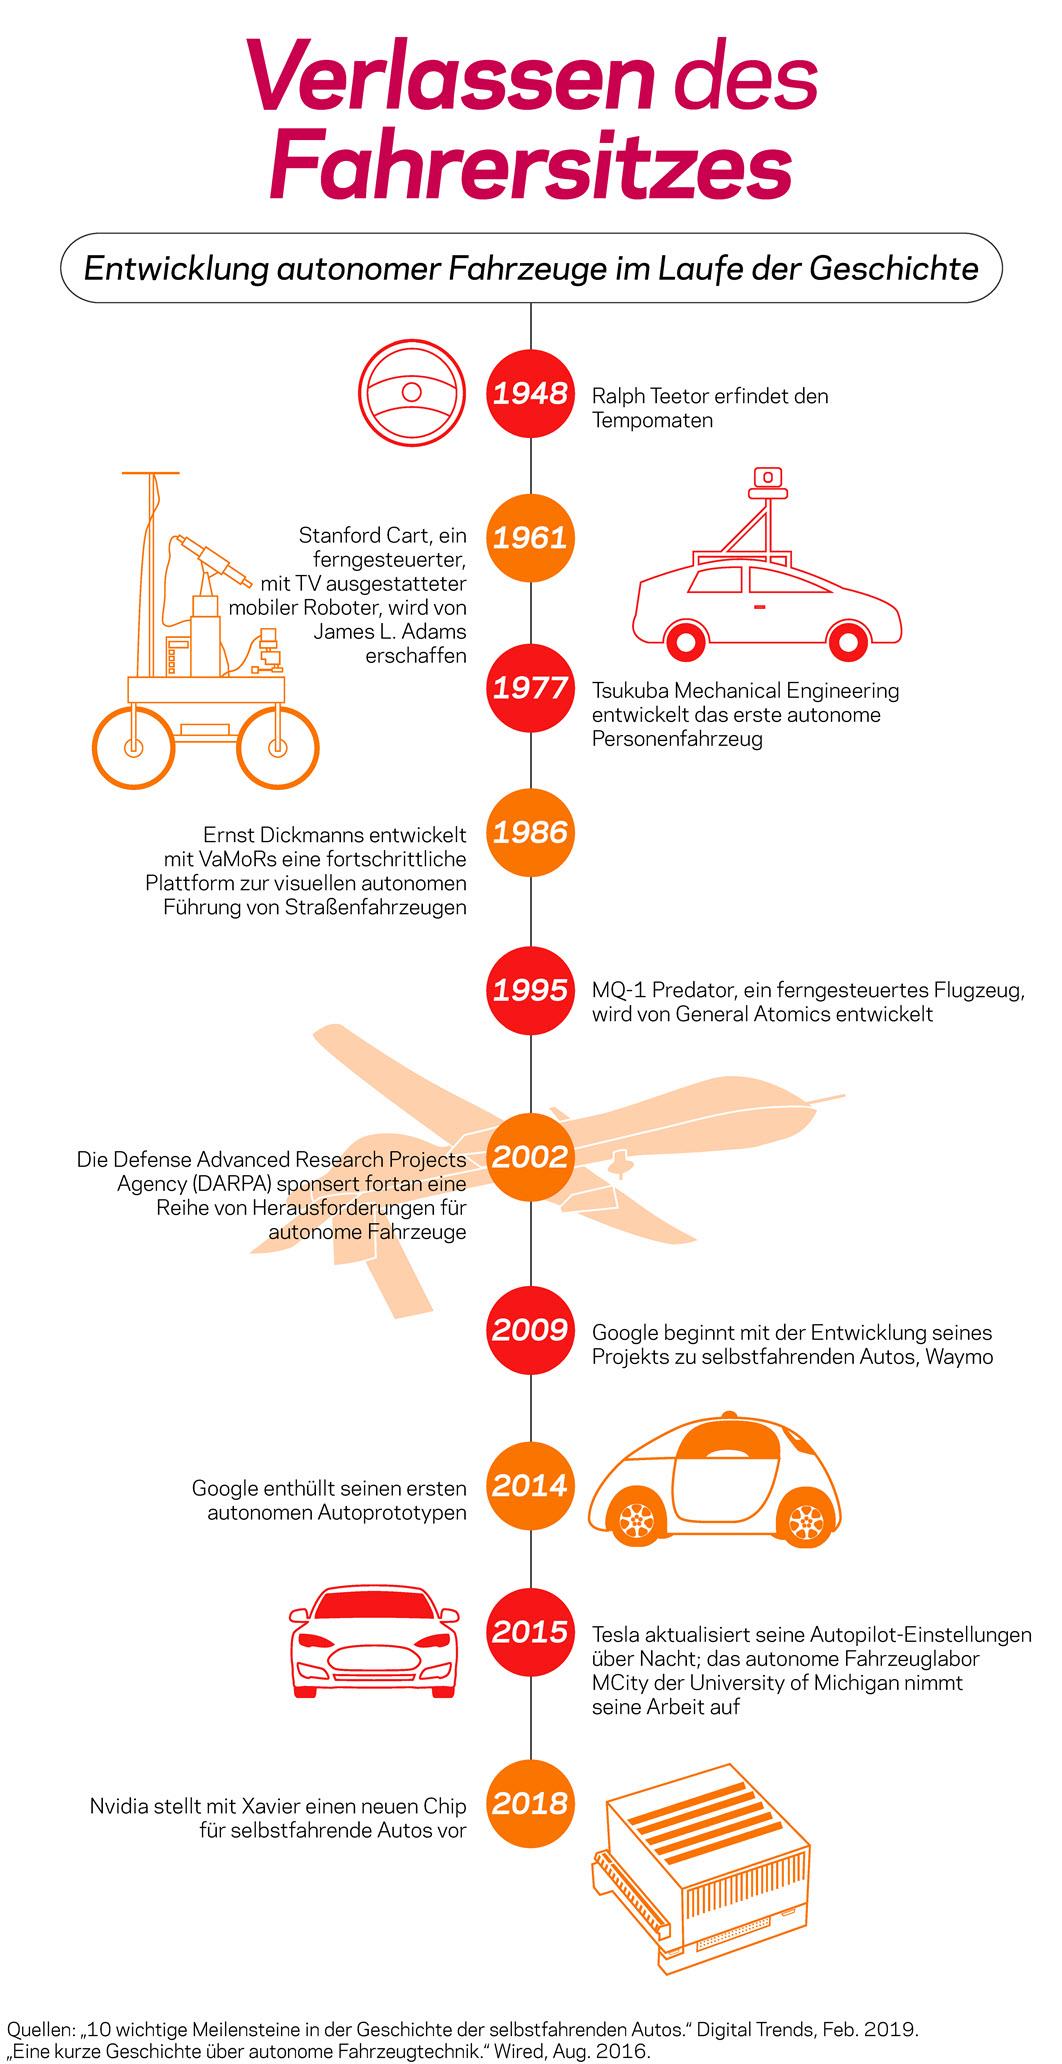  Eine Infografik erklärt die Entwicklung autonomer Fahrzeuge im Laufe der Geschichte.